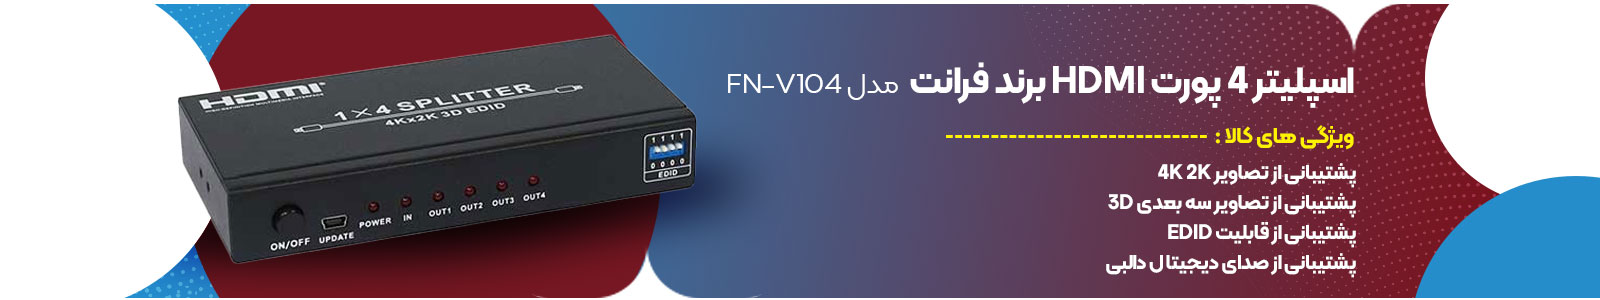 اسپلیتر 4 پورت HDMI برند فرانت مدل FN-V104